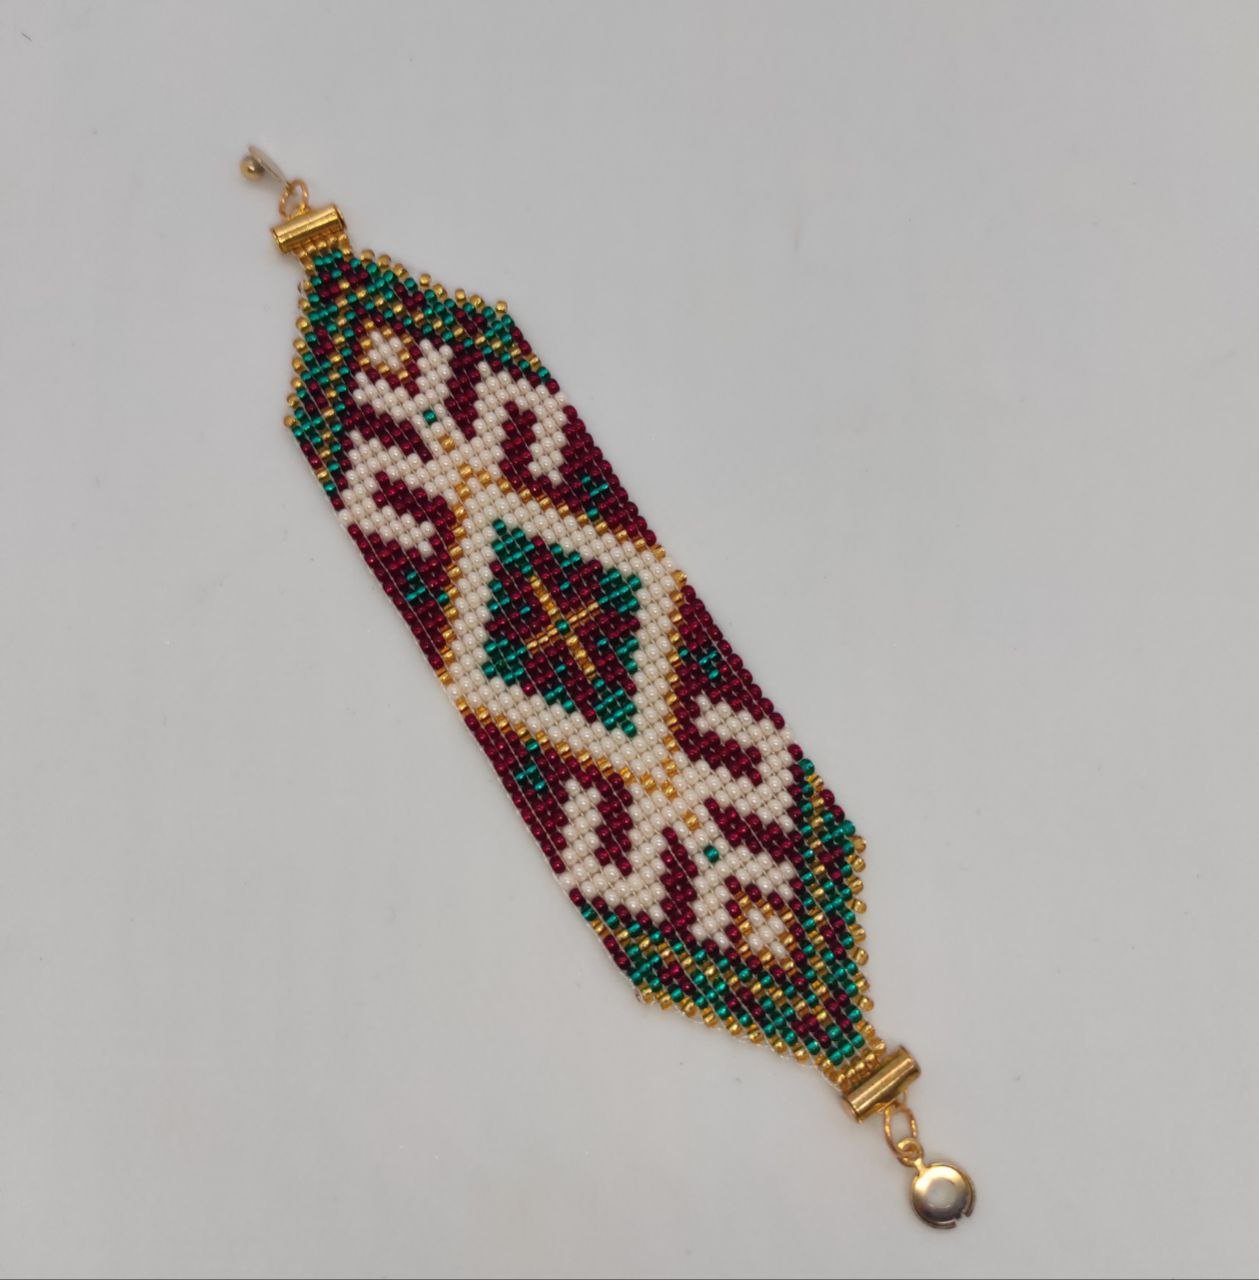 Бісерний браслет “Майя” в зеленому, червоному та золотистому кольорі